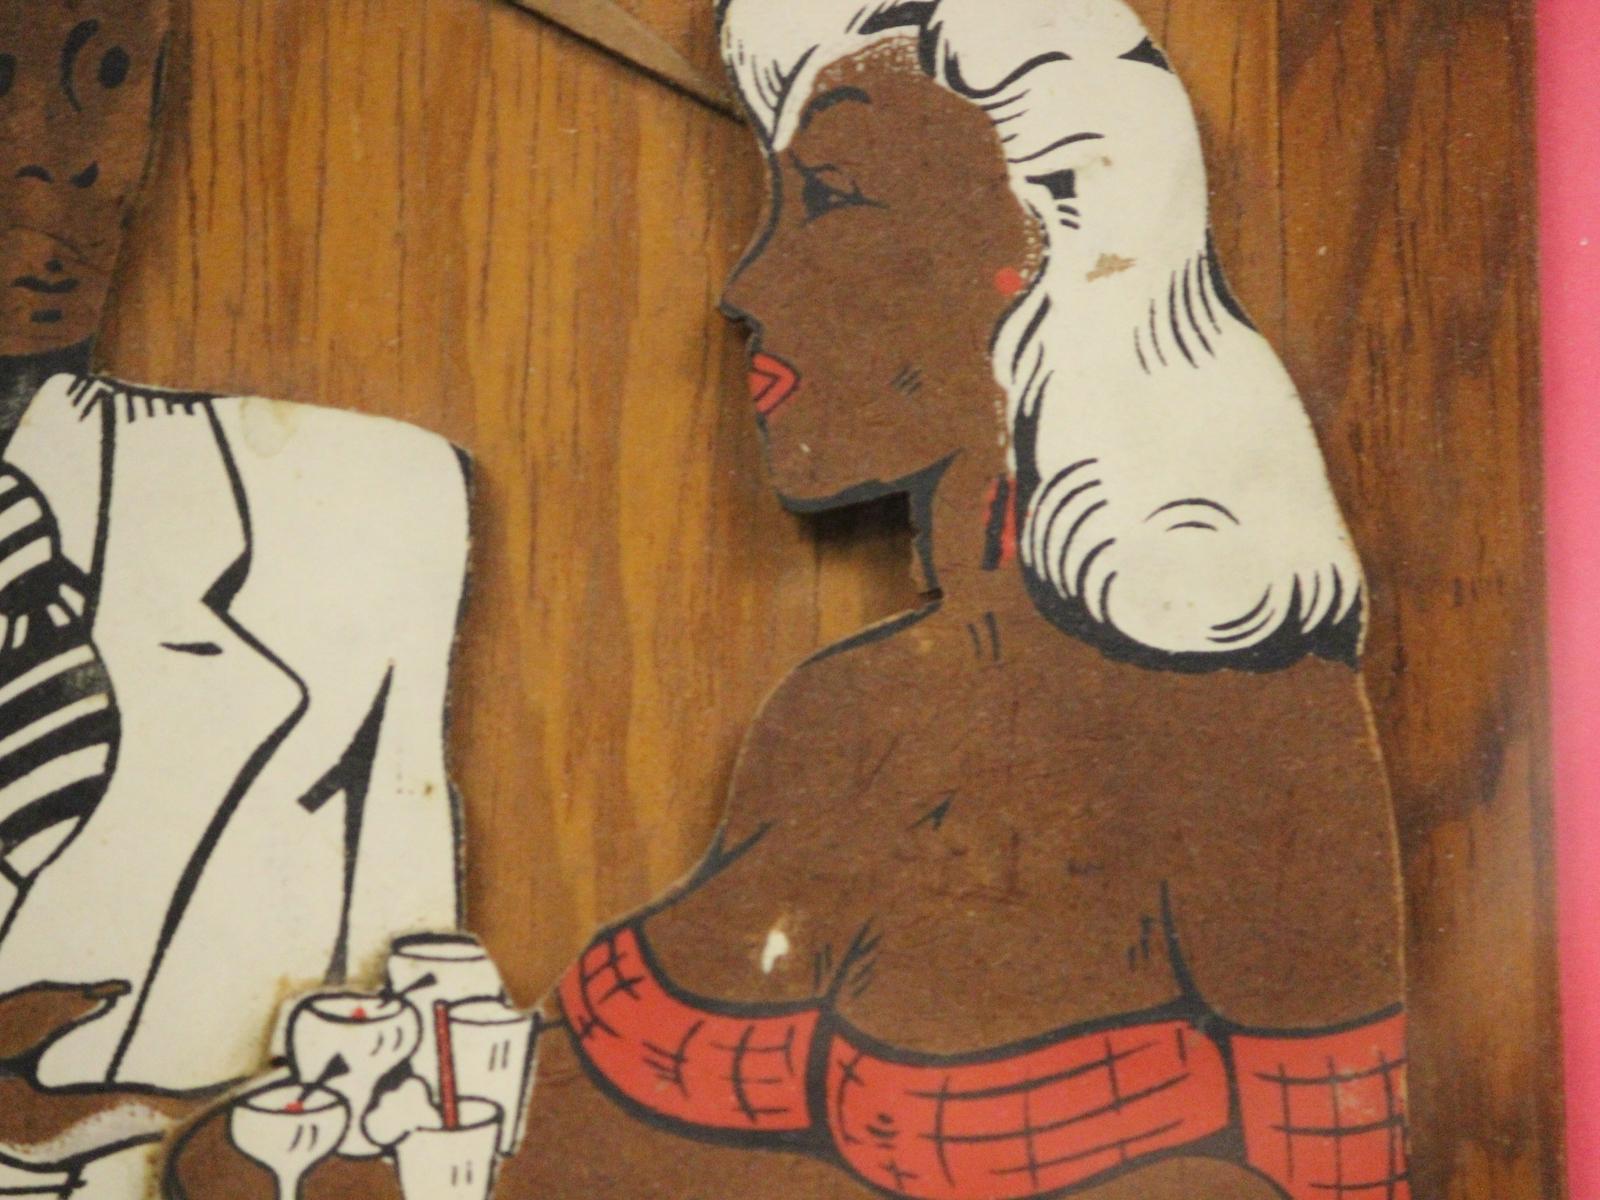 Cocktail-Lounge aus den 1930er Jahren, farbiger Ausschnitt auf einer Holztafel mit einem im weißen Smoking gekleideten Gast und einer vollbusigen Kellnerin im Gespräch

Kunst Sz: 13 1/2 